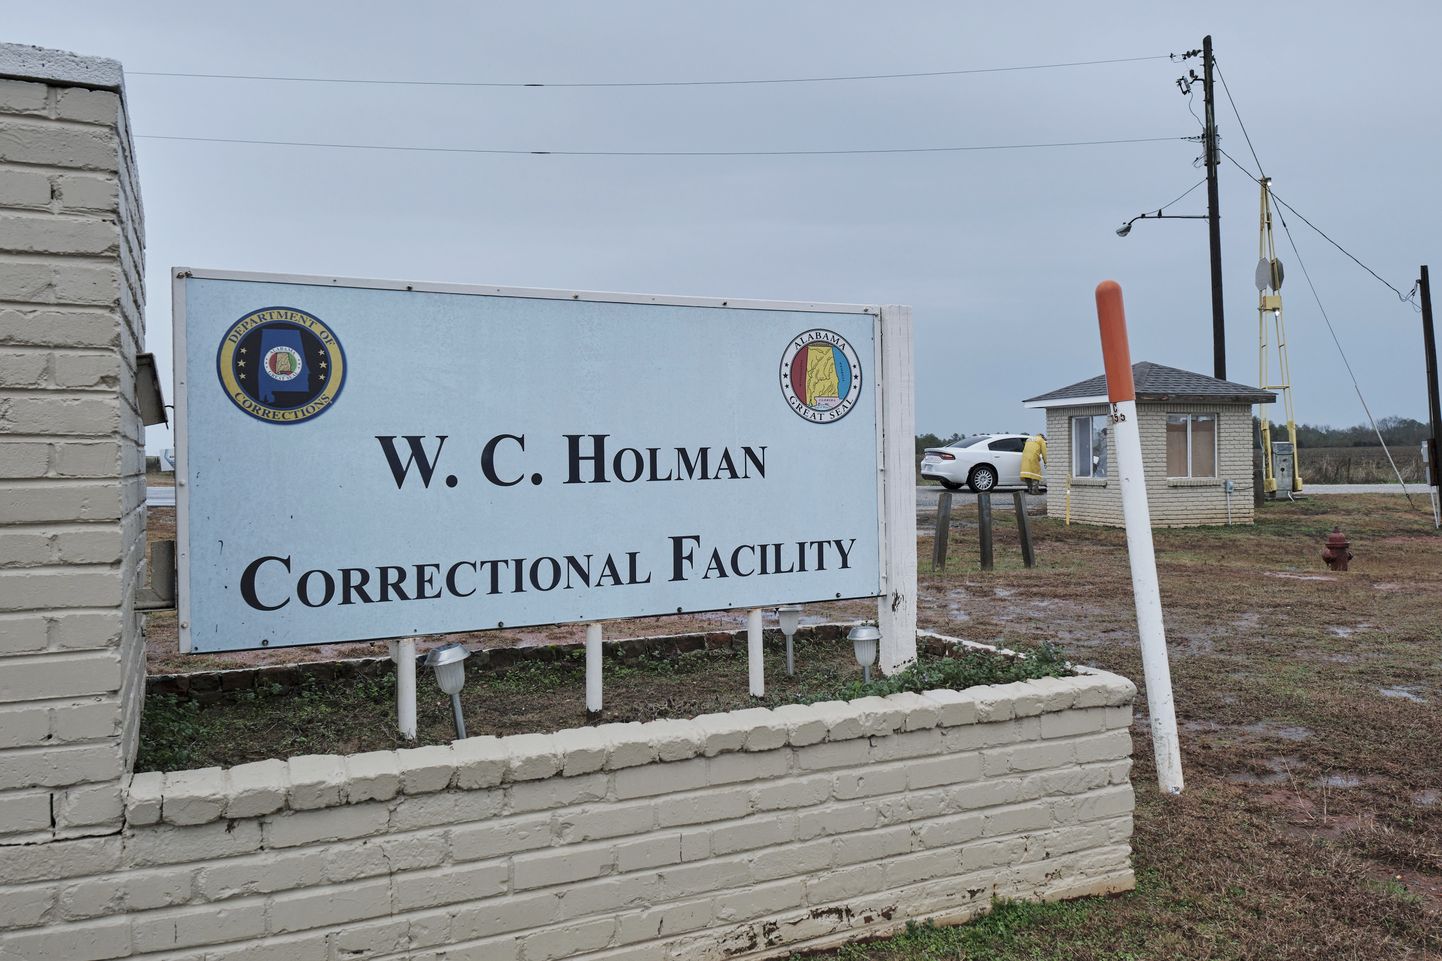 Hukkamine toimus Holmani vanglaasutuses.